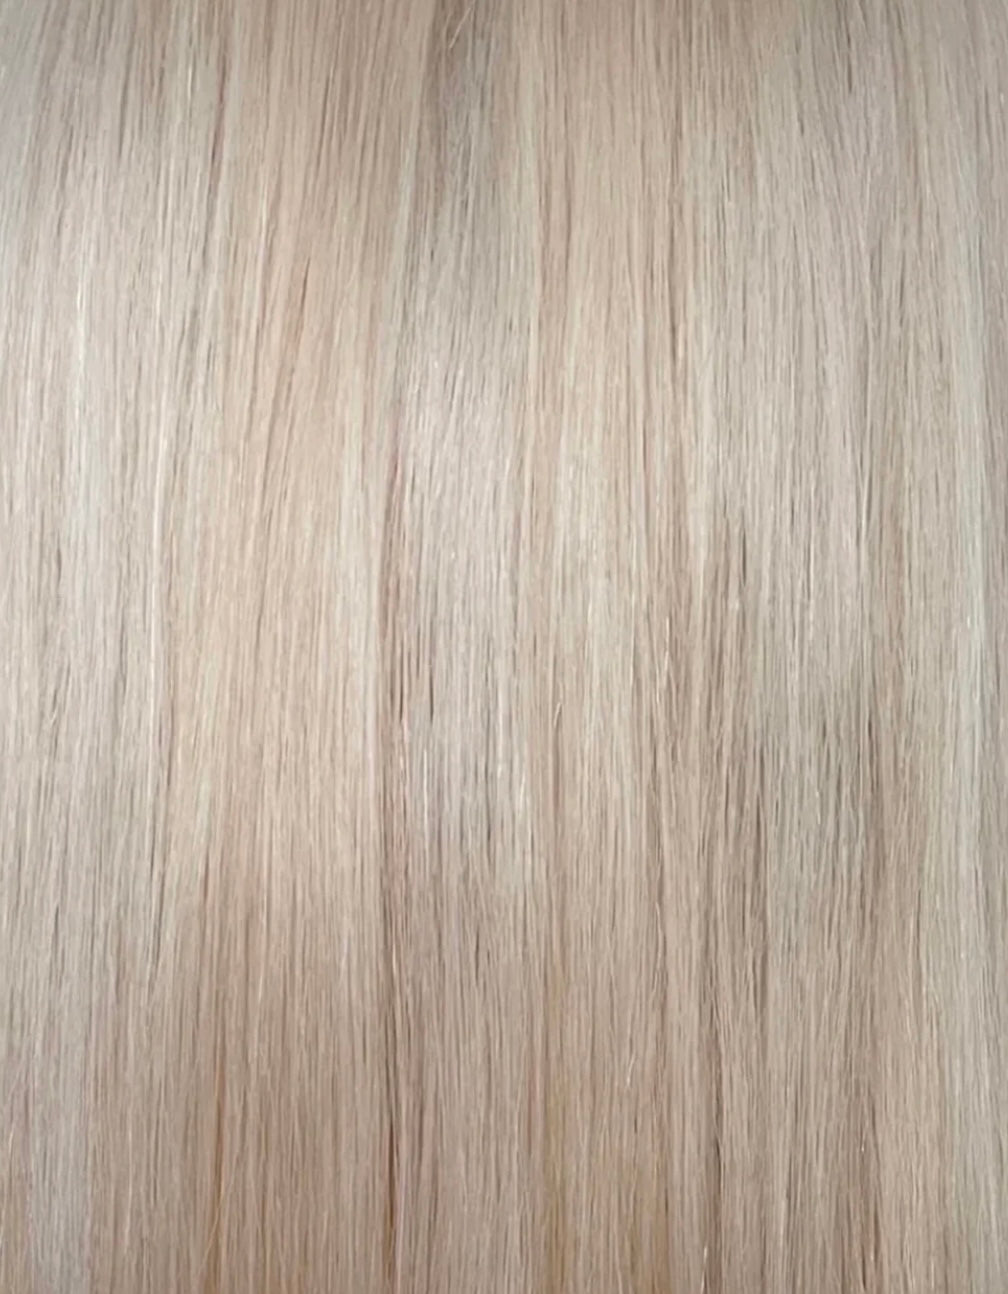 Custom colour - HD FULL LACE wig - 18” European hair - 22/22.5